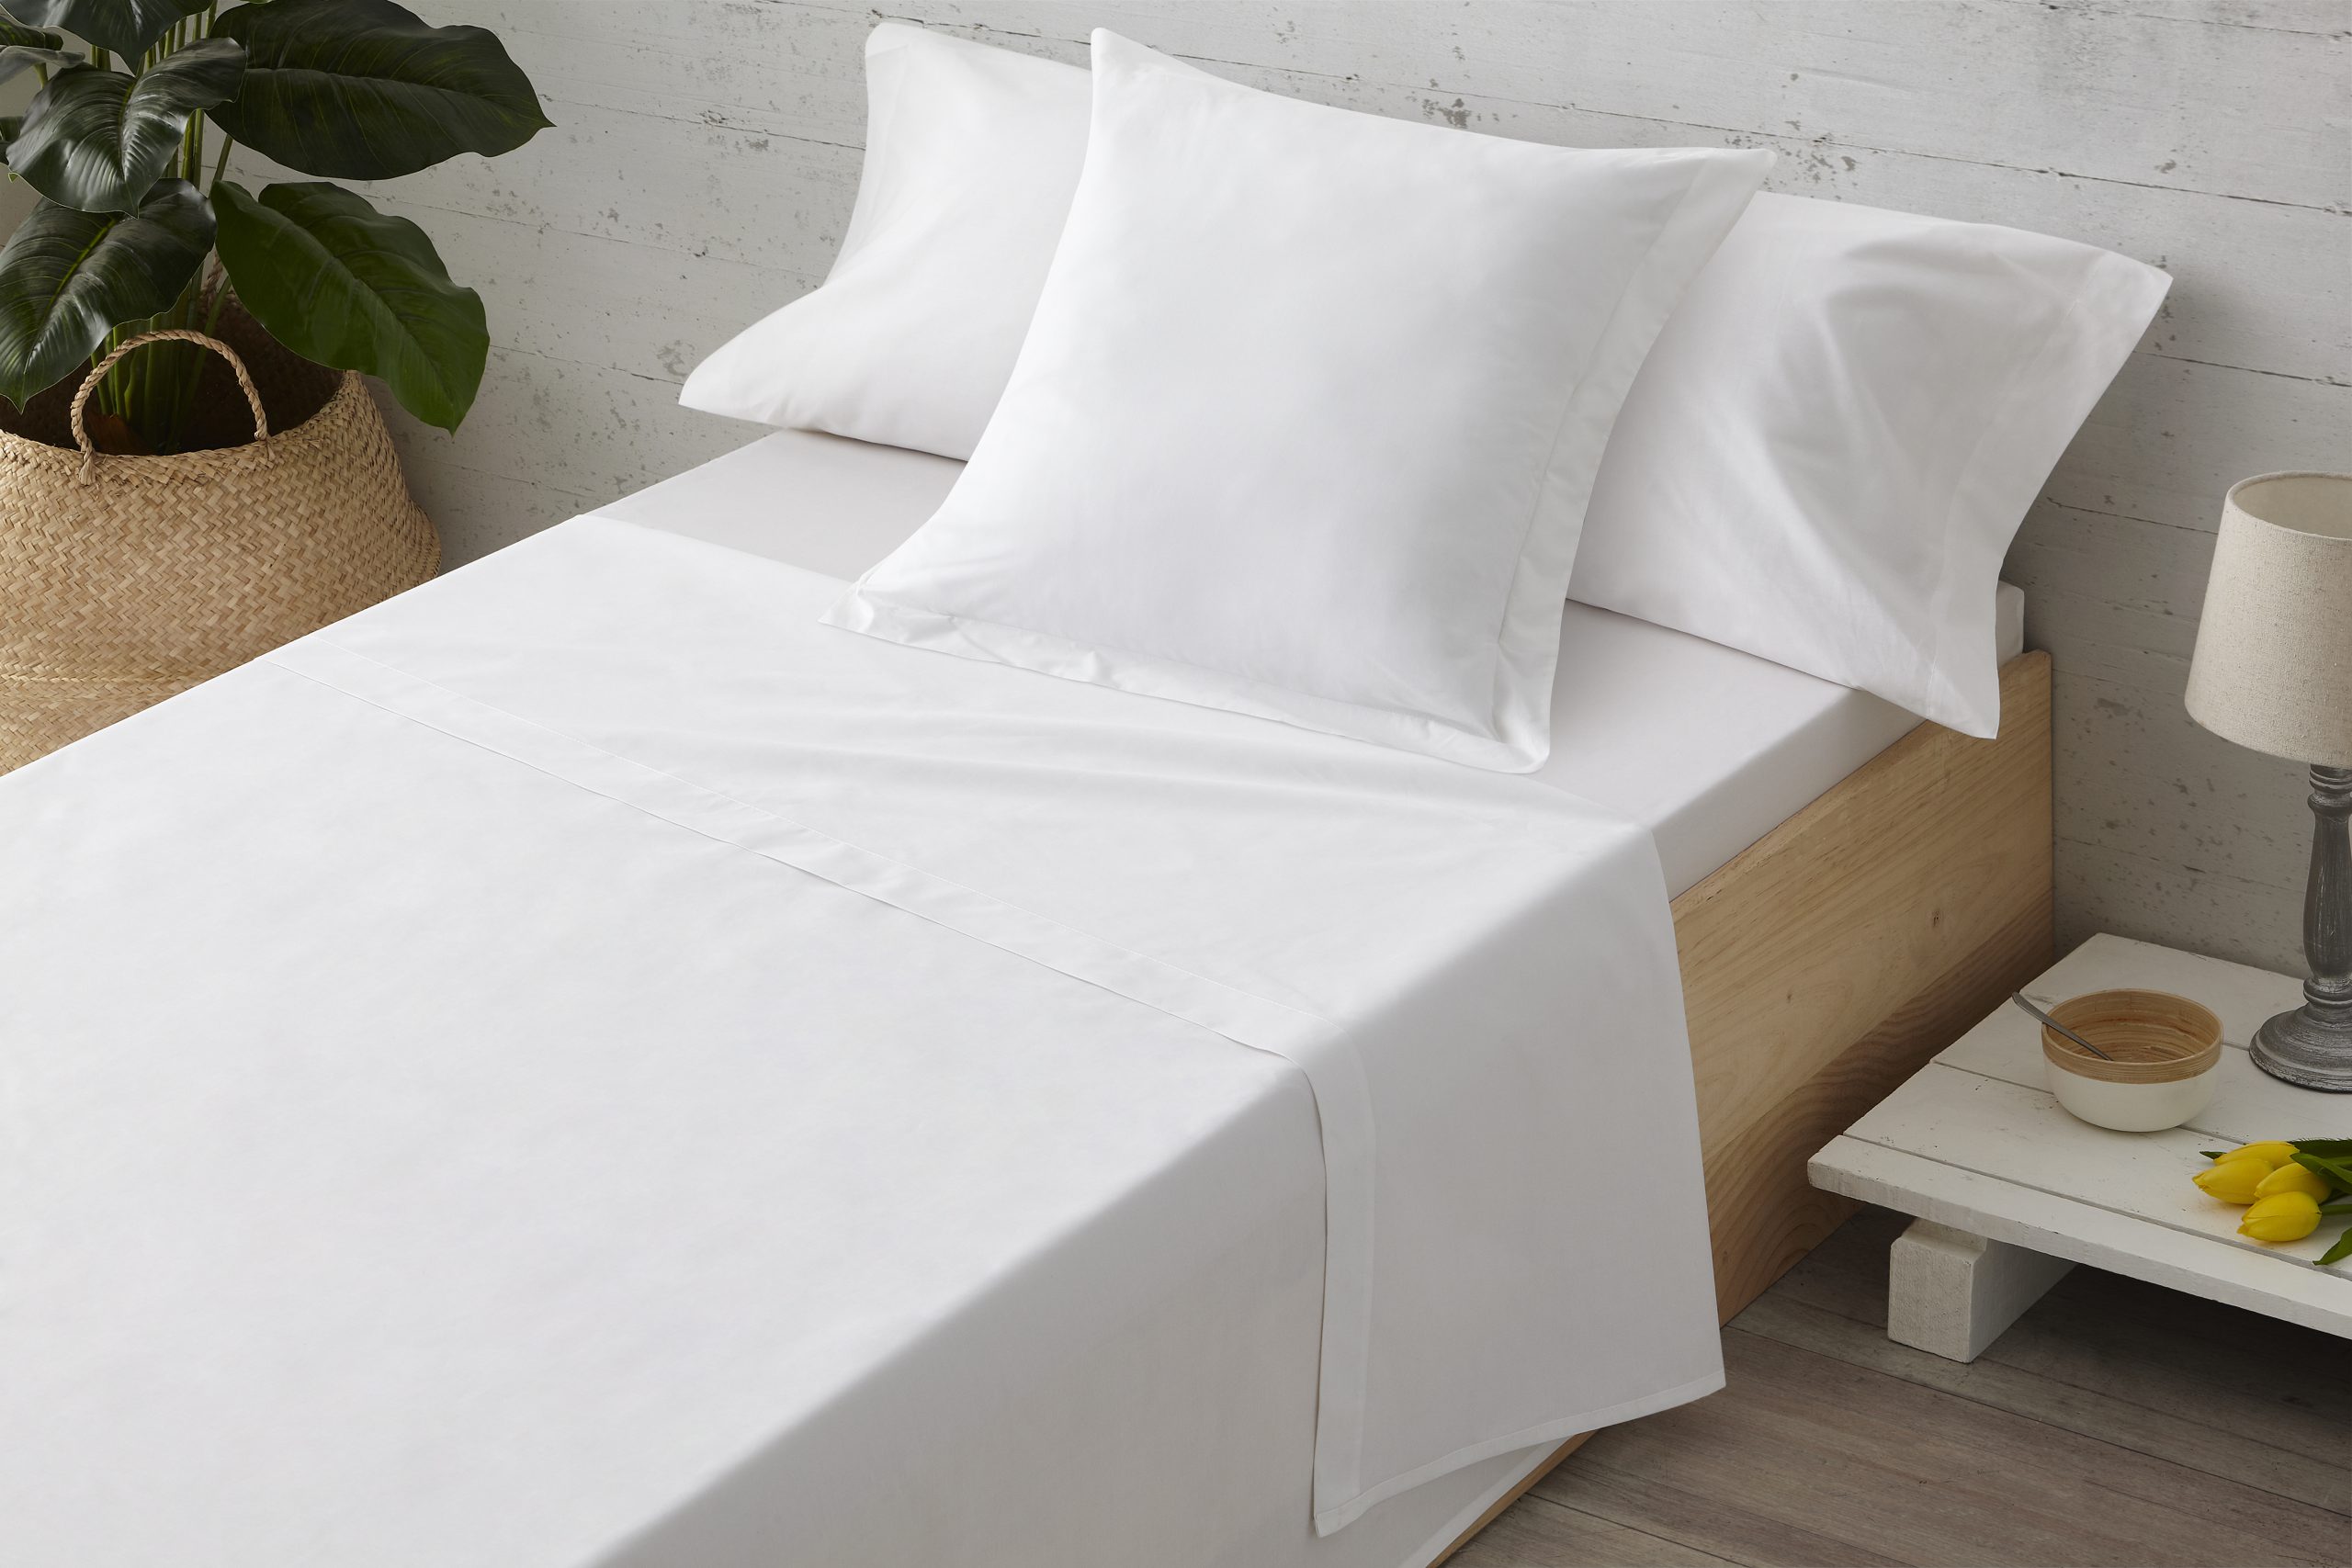 Sabana encimera Fabricado en EU Blanca con remate en Blanco/Color Blanco, Cama de 180 100% algodón percal 200 Hilos 